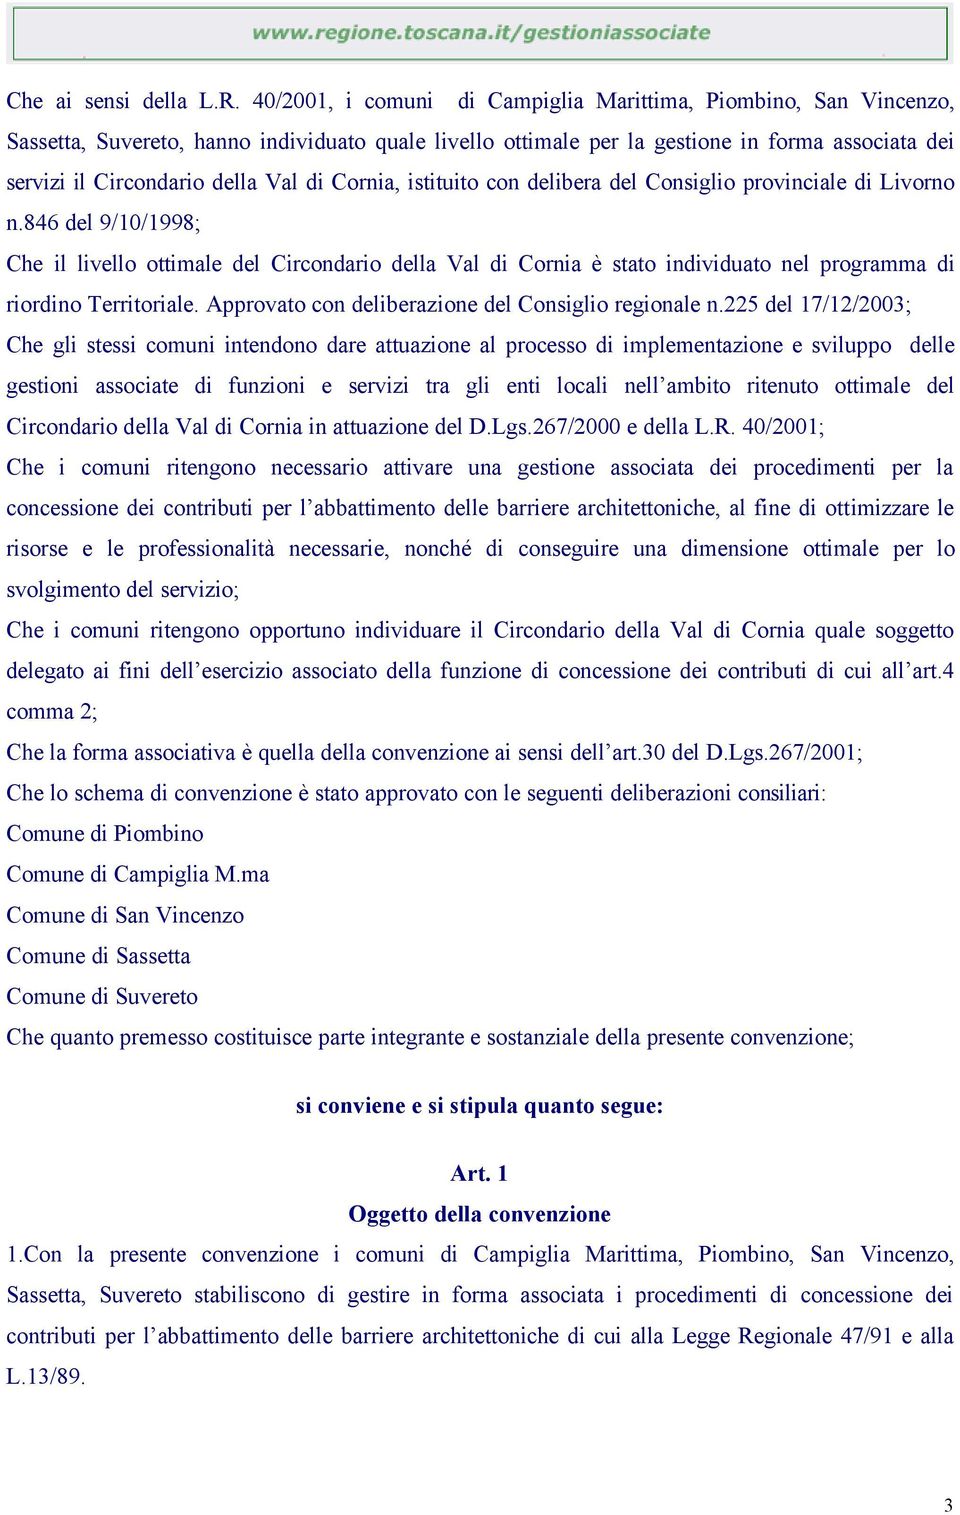 di Cornia, istituito con delibera del Consiglio provinciale di Livorno n.